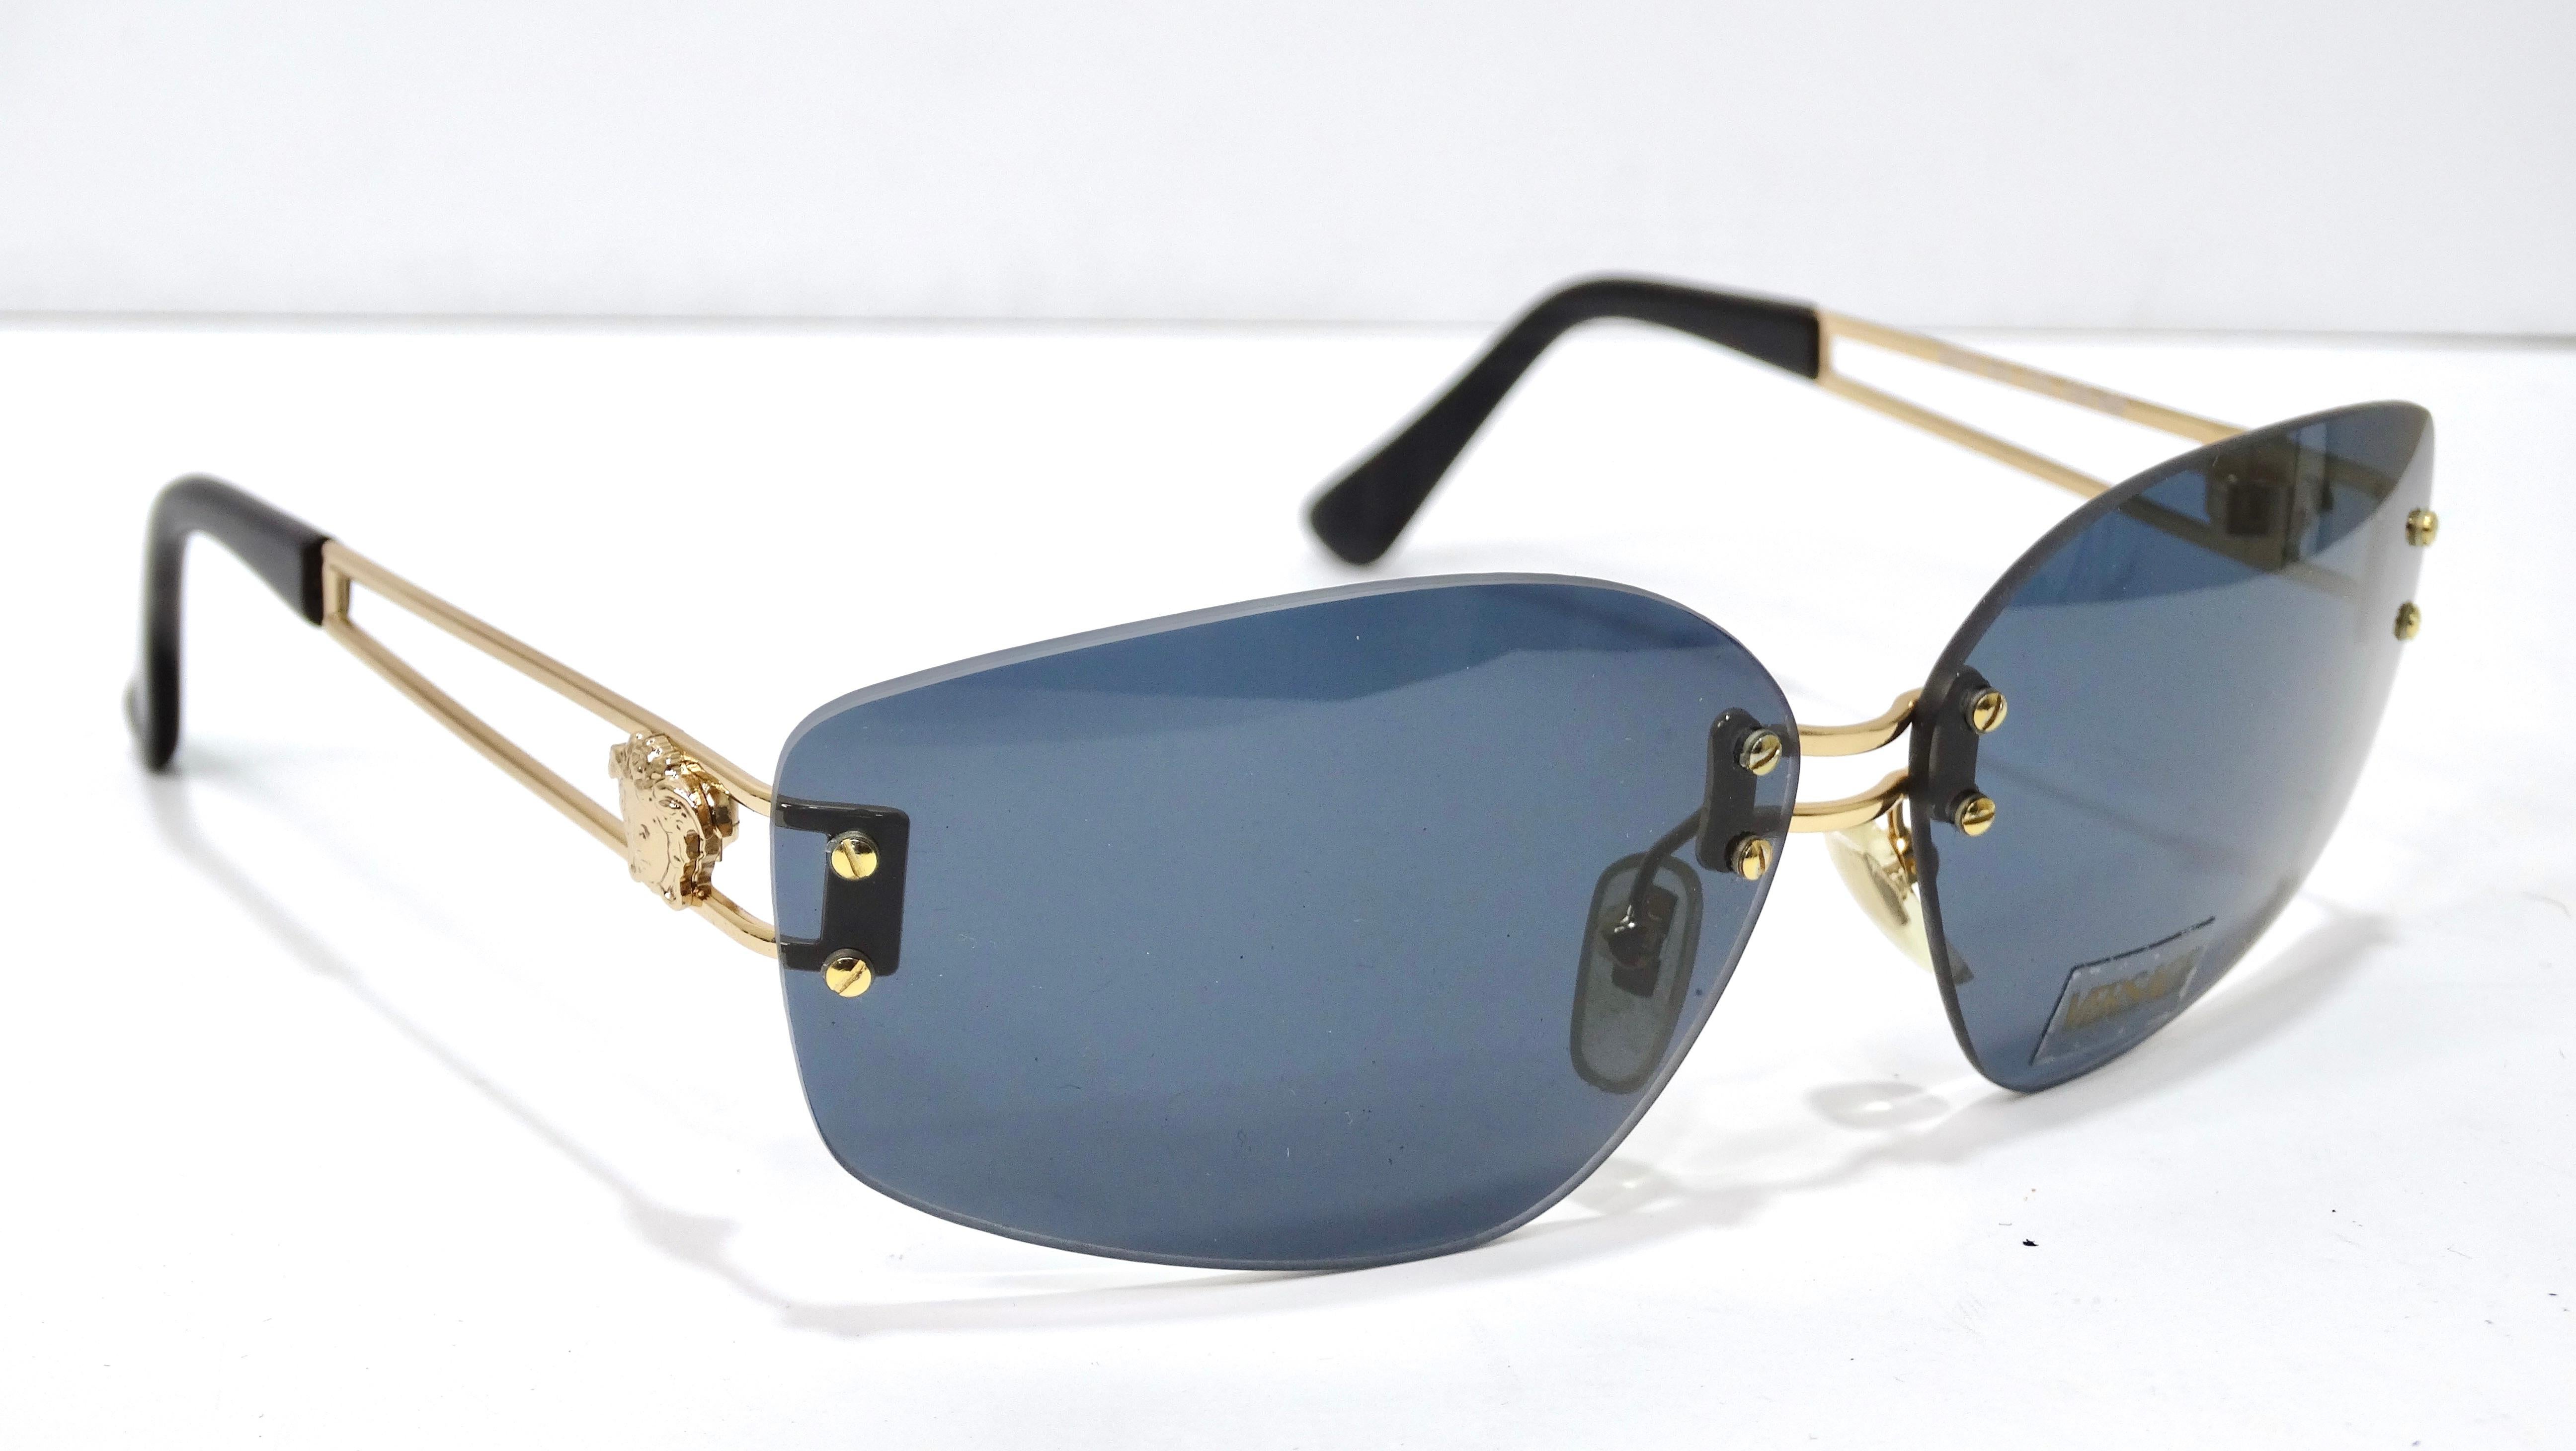 Vintage Gianni Versace von seiner besten Seite! Holen Sie sich ein Stück des kultigen Modehauses mit dieser Deadstock-Sonnenbrille.  Die richtigen Accessoires können ein Outfit von null auf hundert verändern! Probieren Sie es aus mit dieser coolen